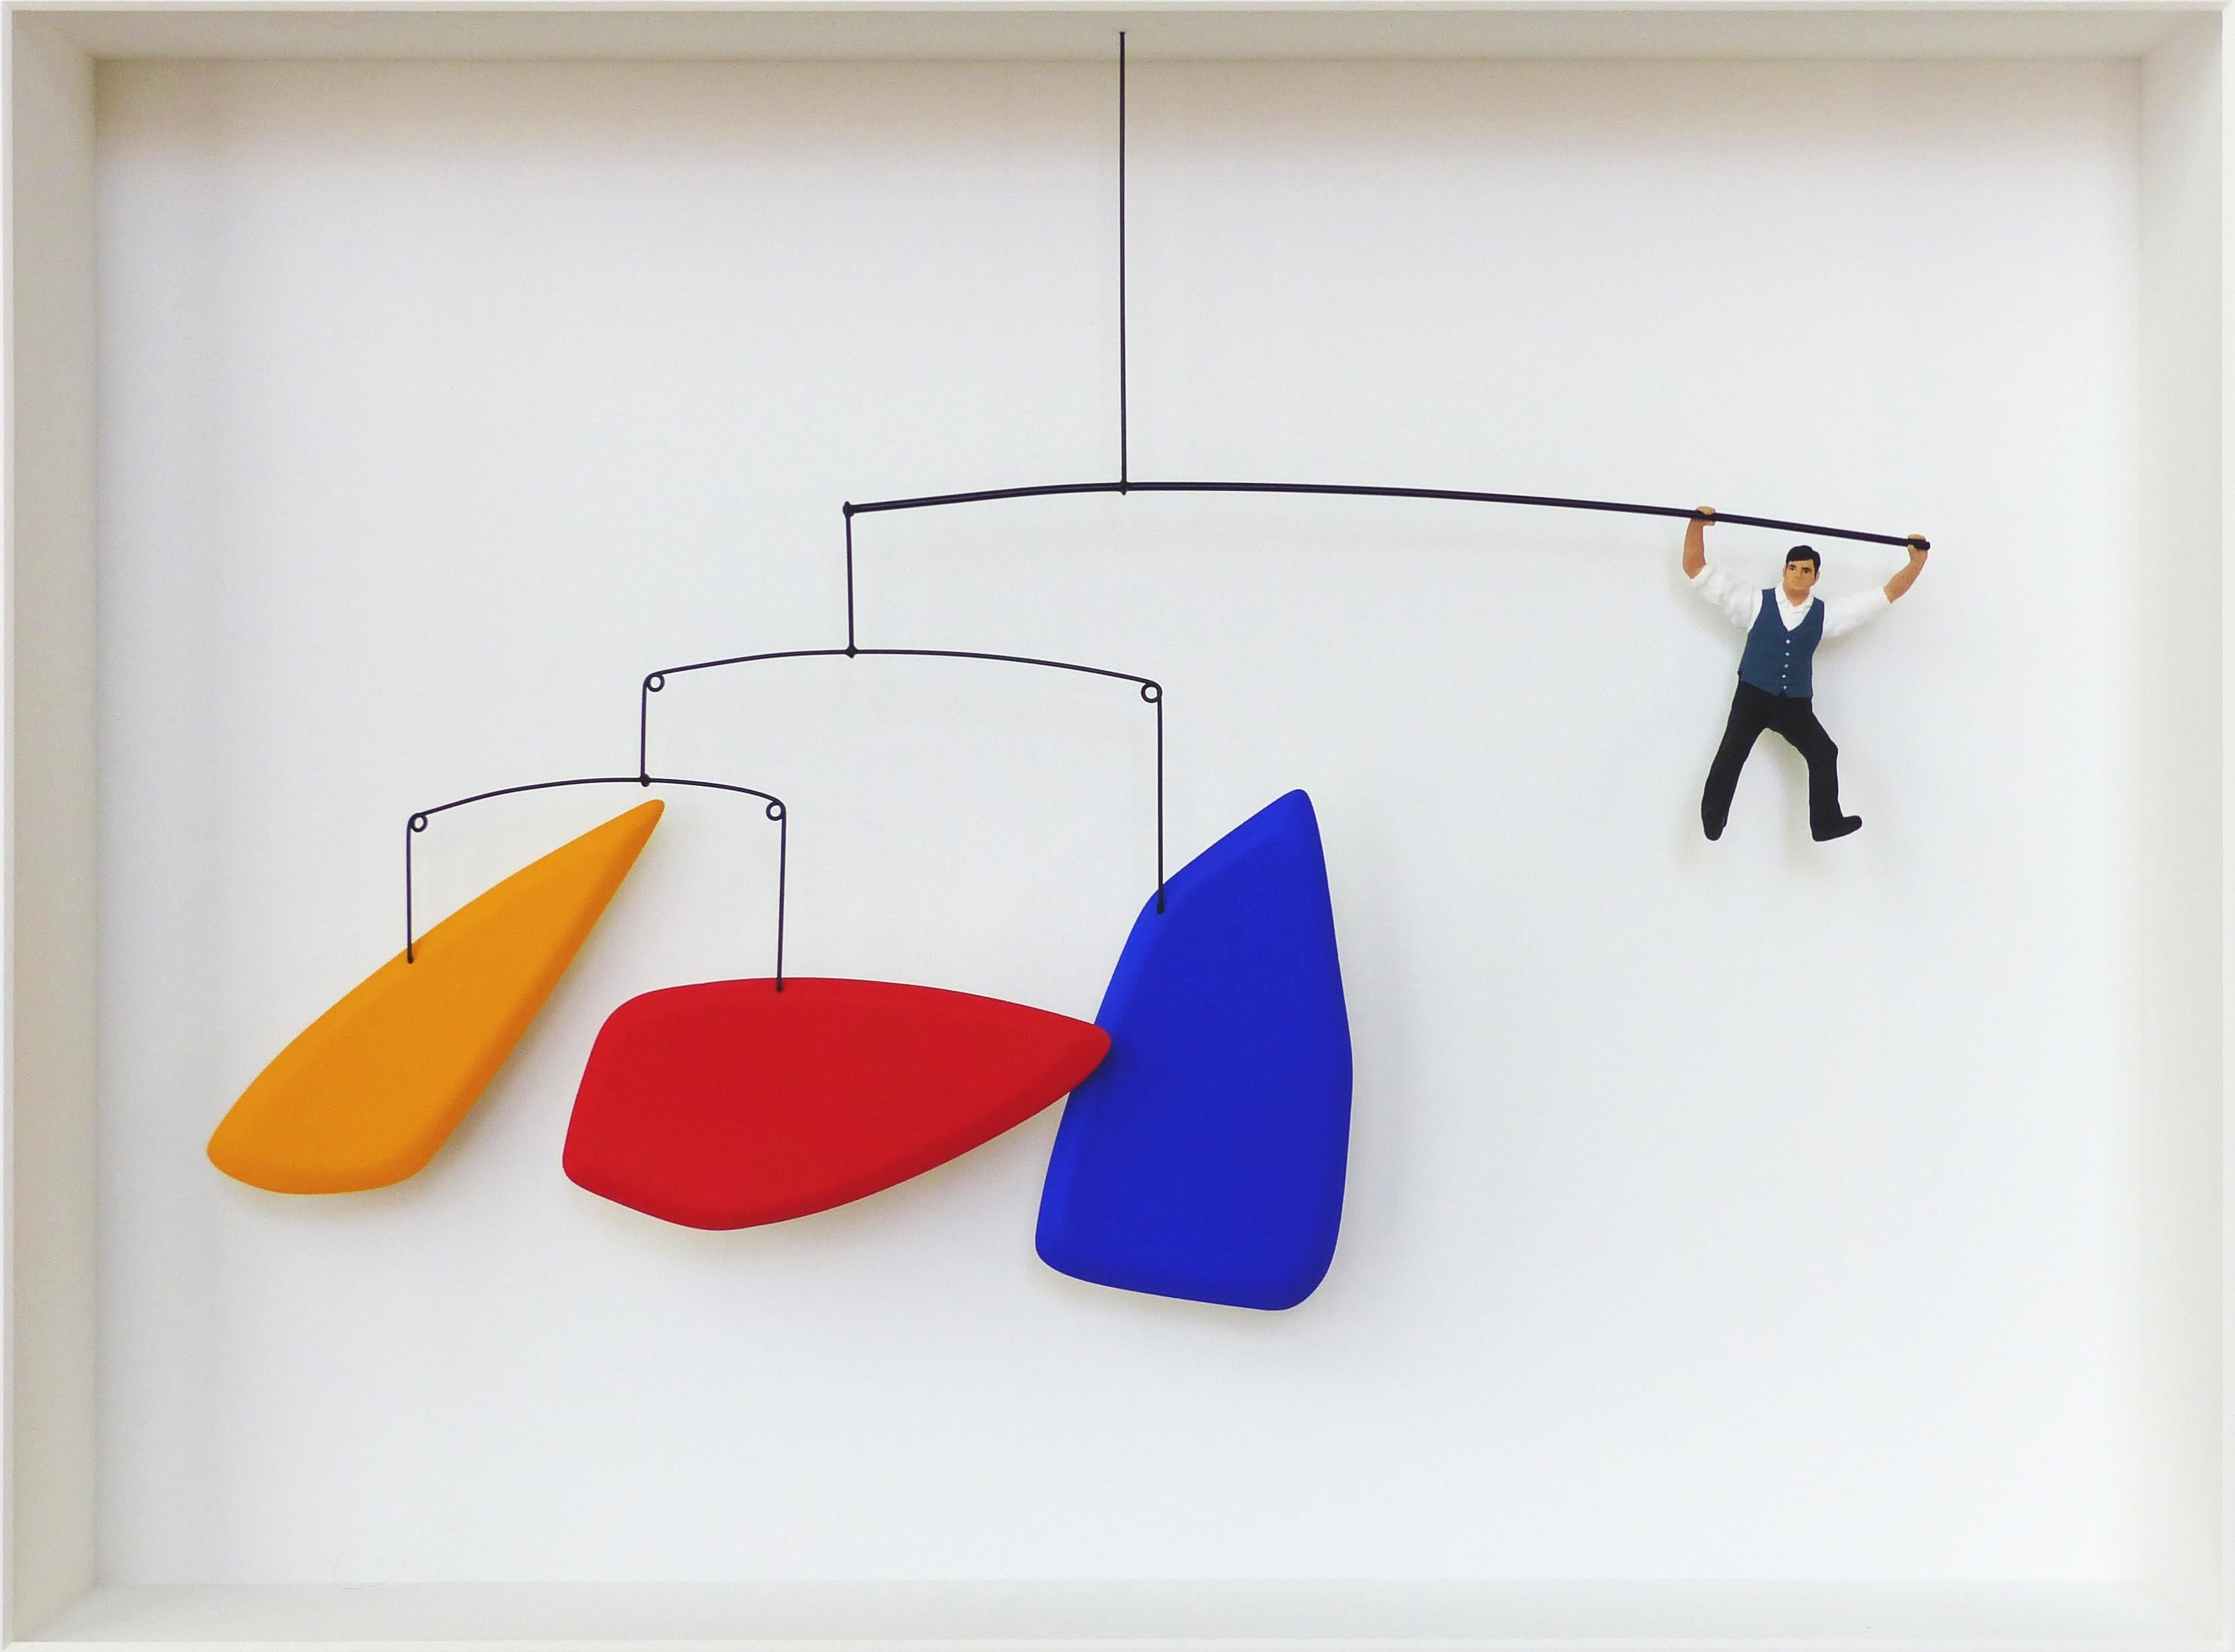 Homage to Calder - contemporary art work, design tribute to Alexander Calder 